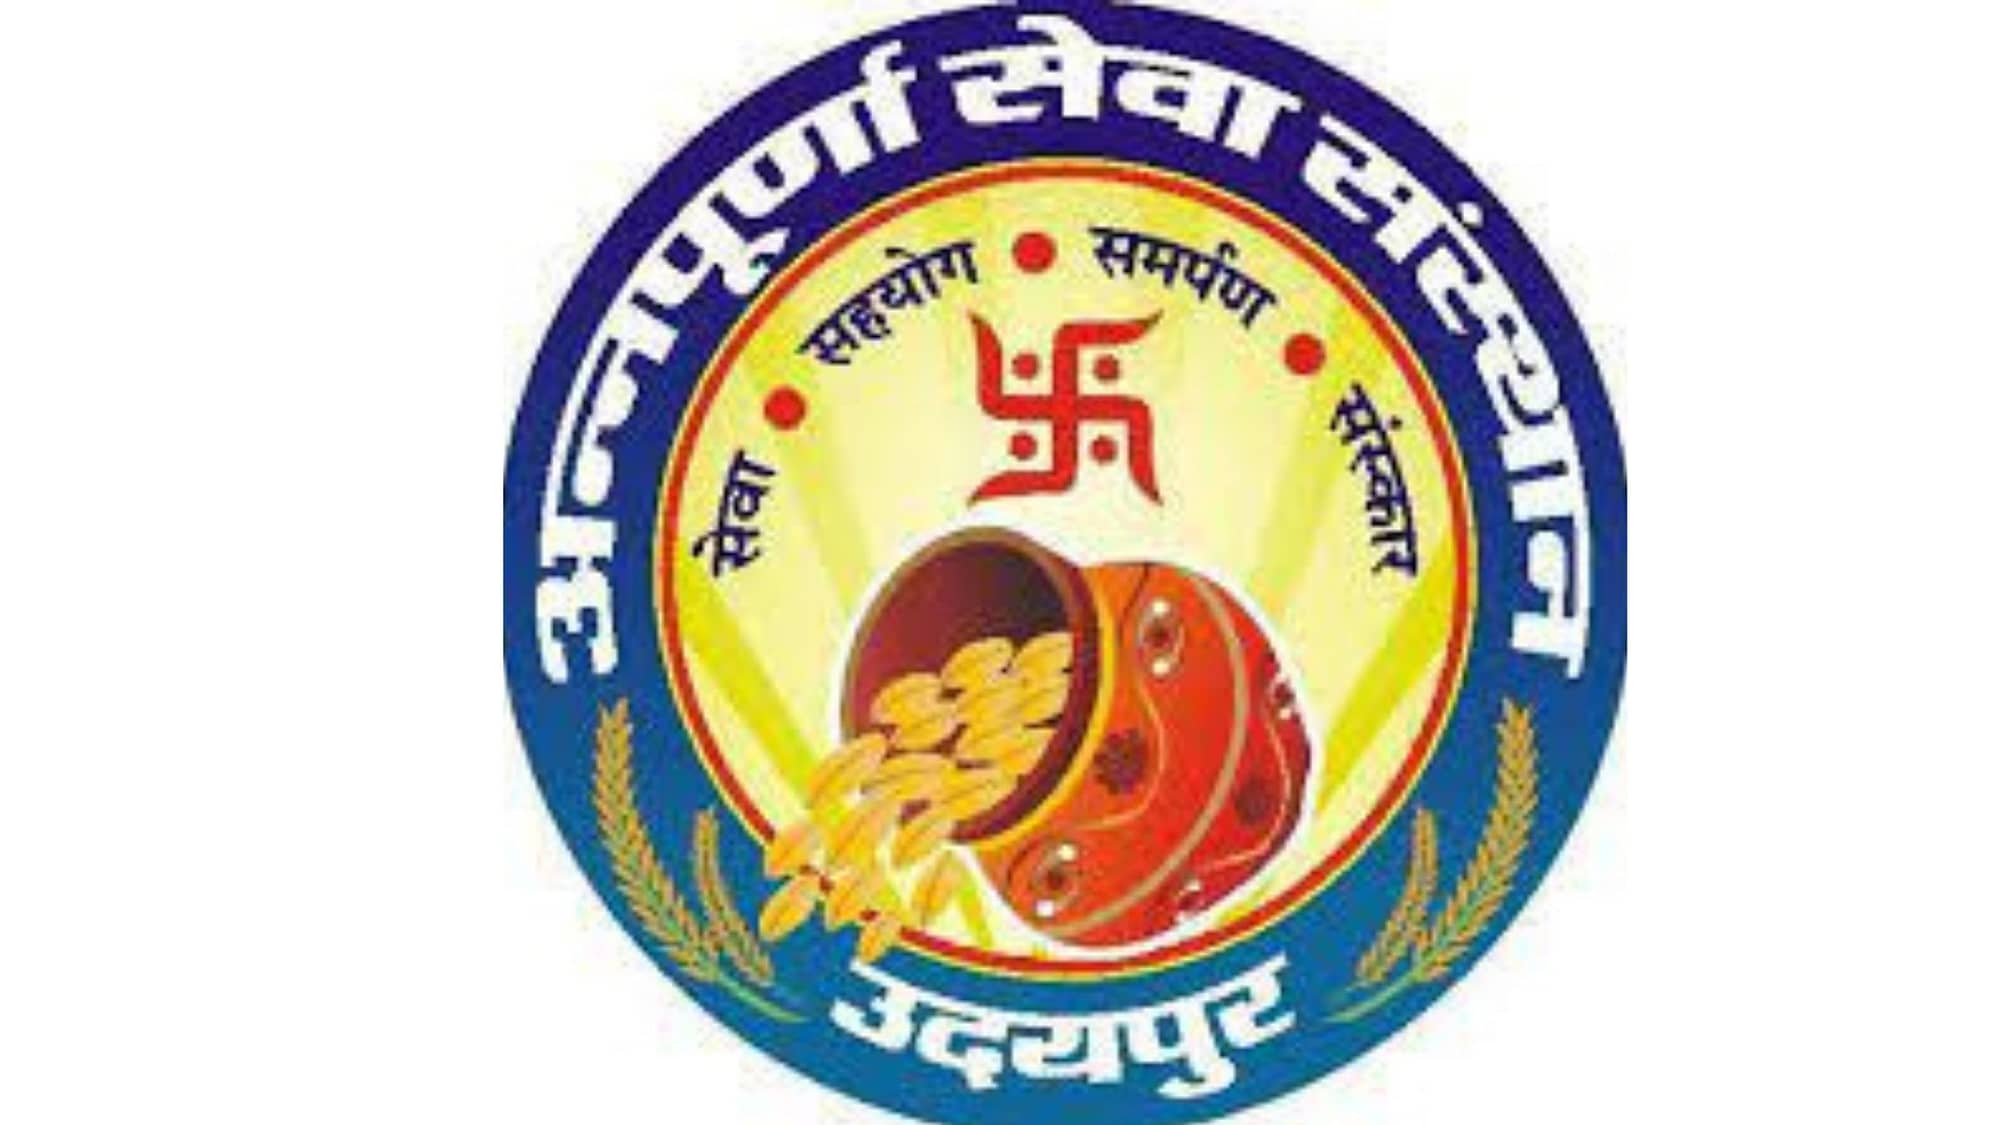 Annapurna Seva Sansthan - logo